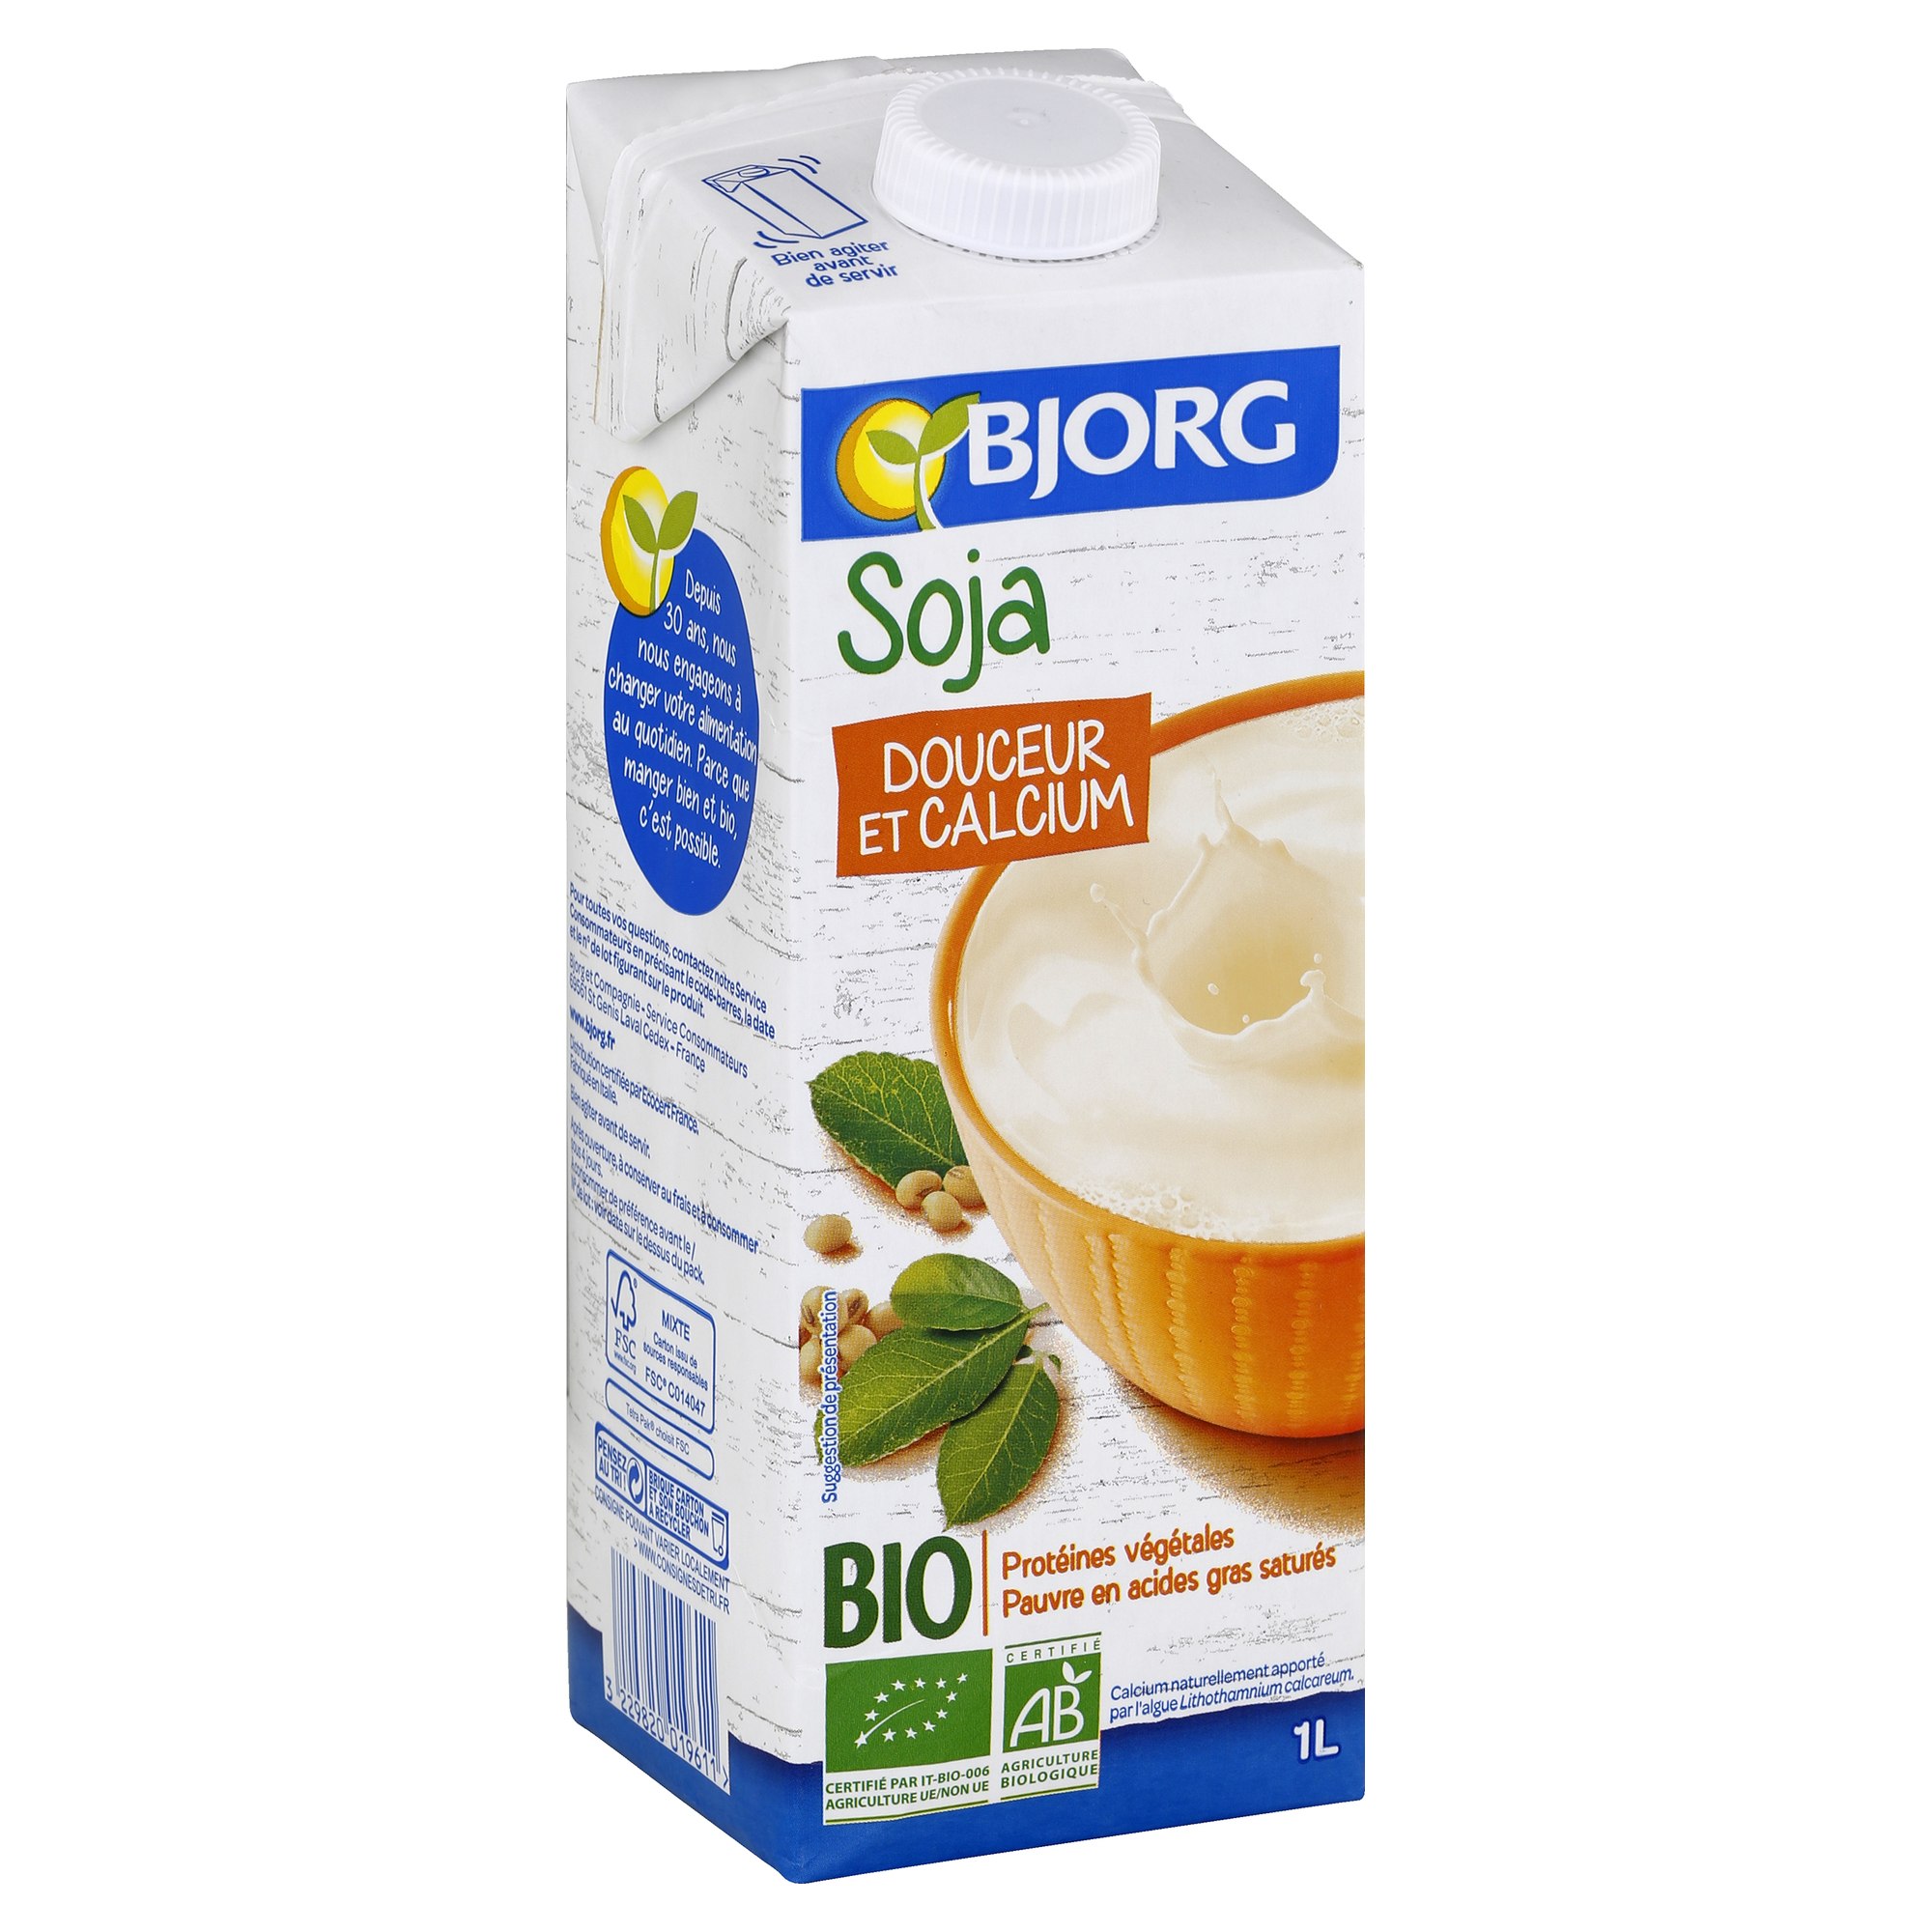 Bjorg Organic Calcium Soy Milk (1L)